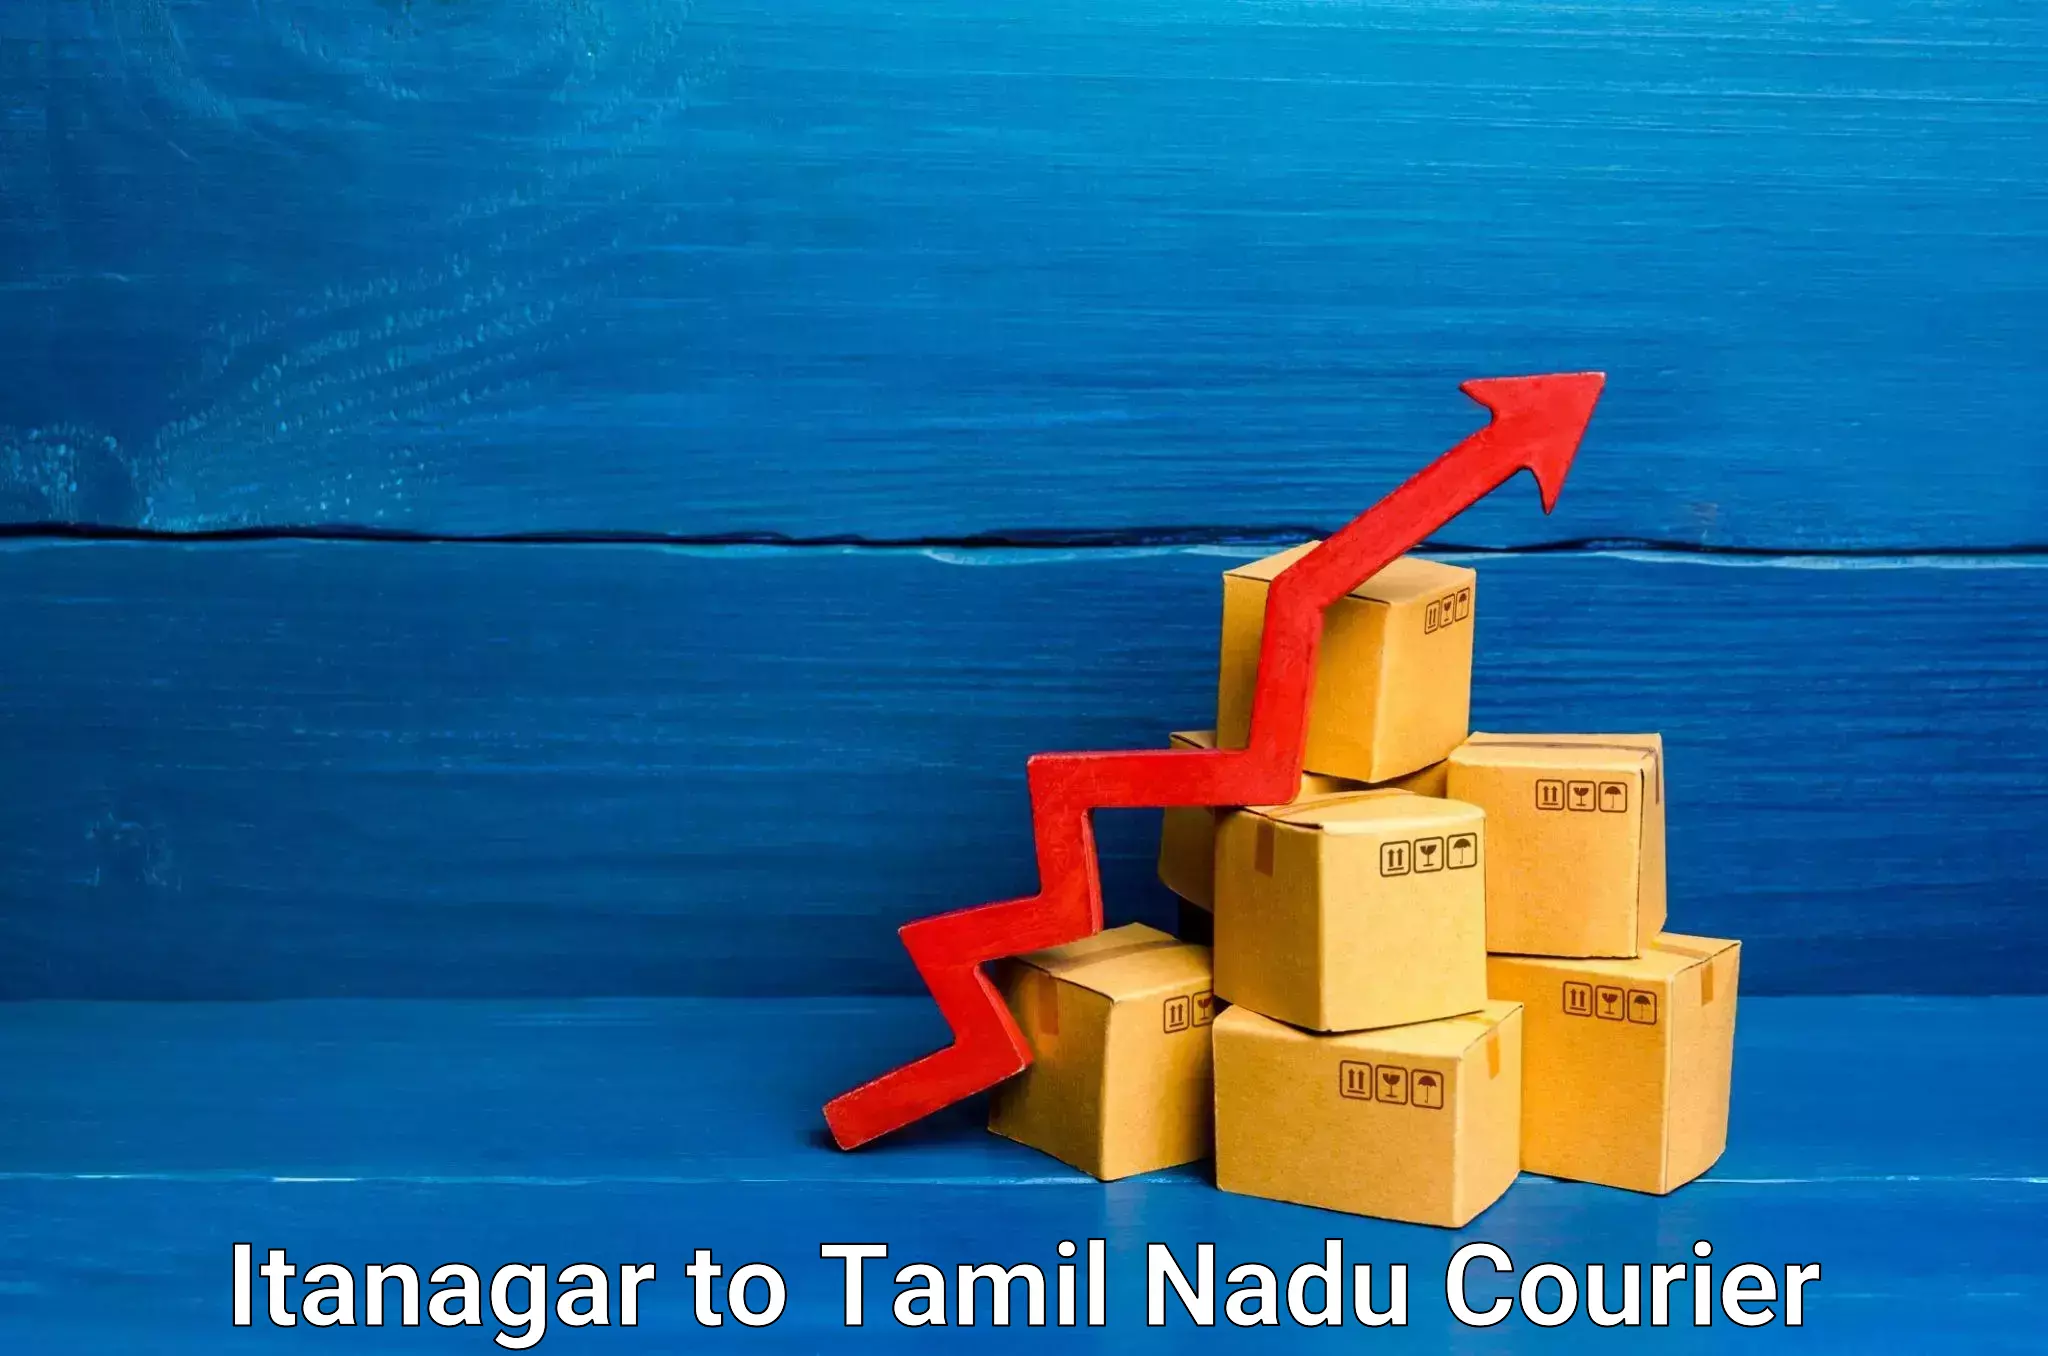 Flexible delivery schedules Itanagar to Tamil Nadu